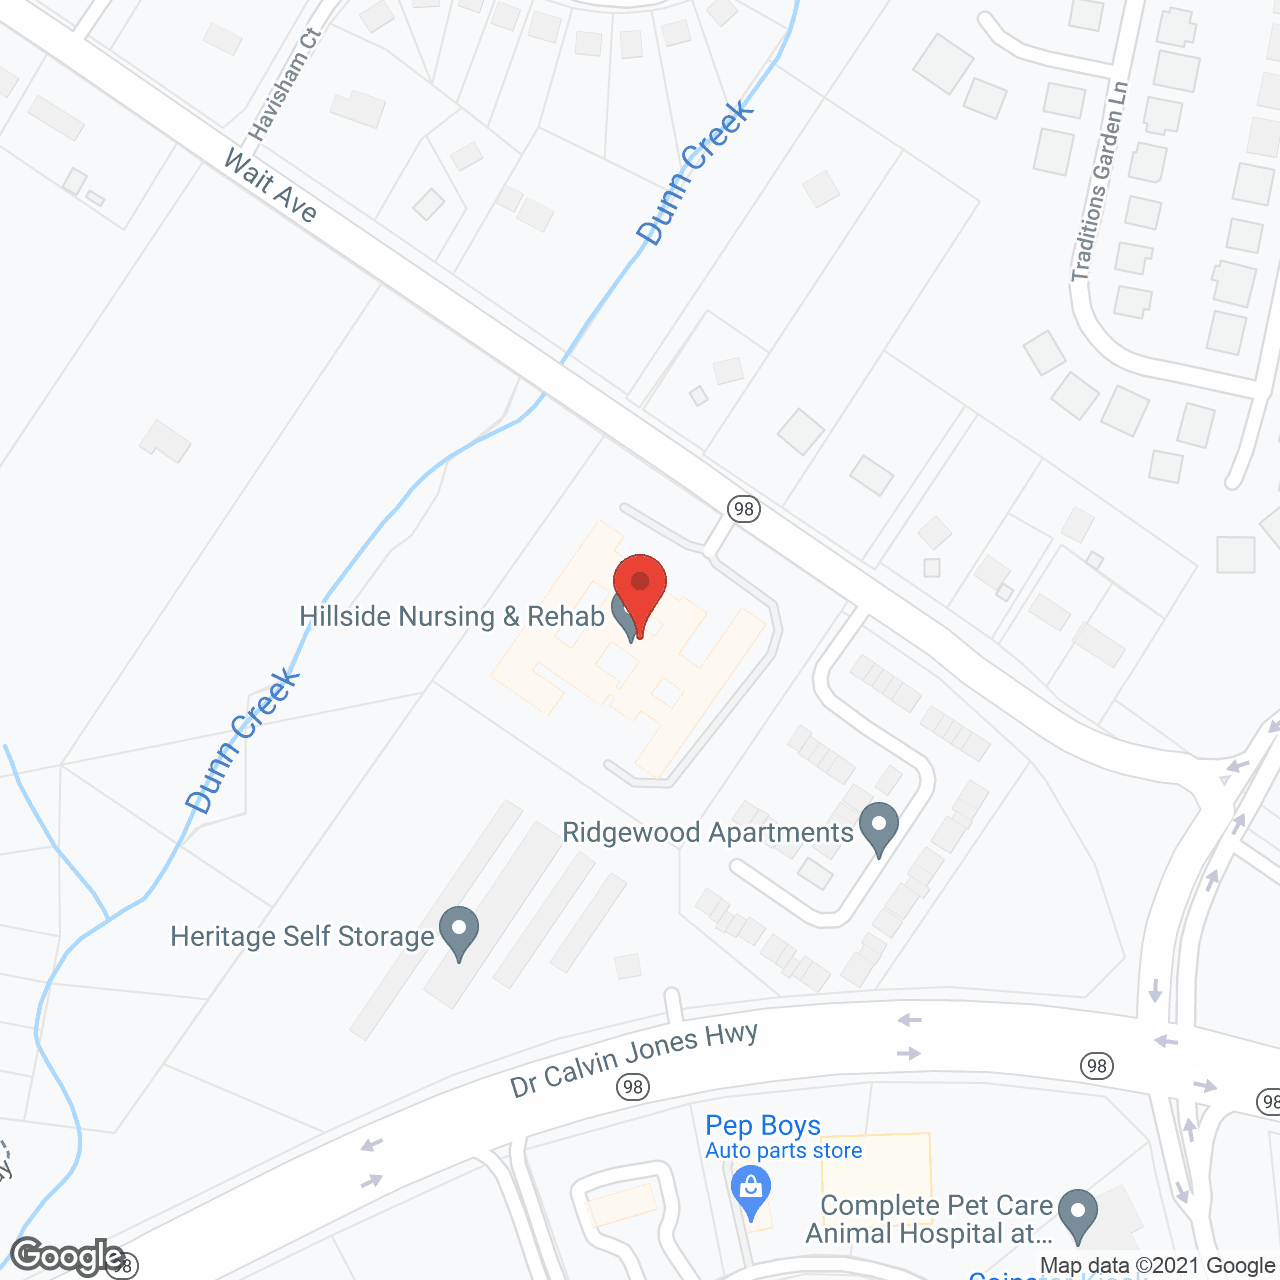 Hillside Nursing Center of Wake Forest in google map